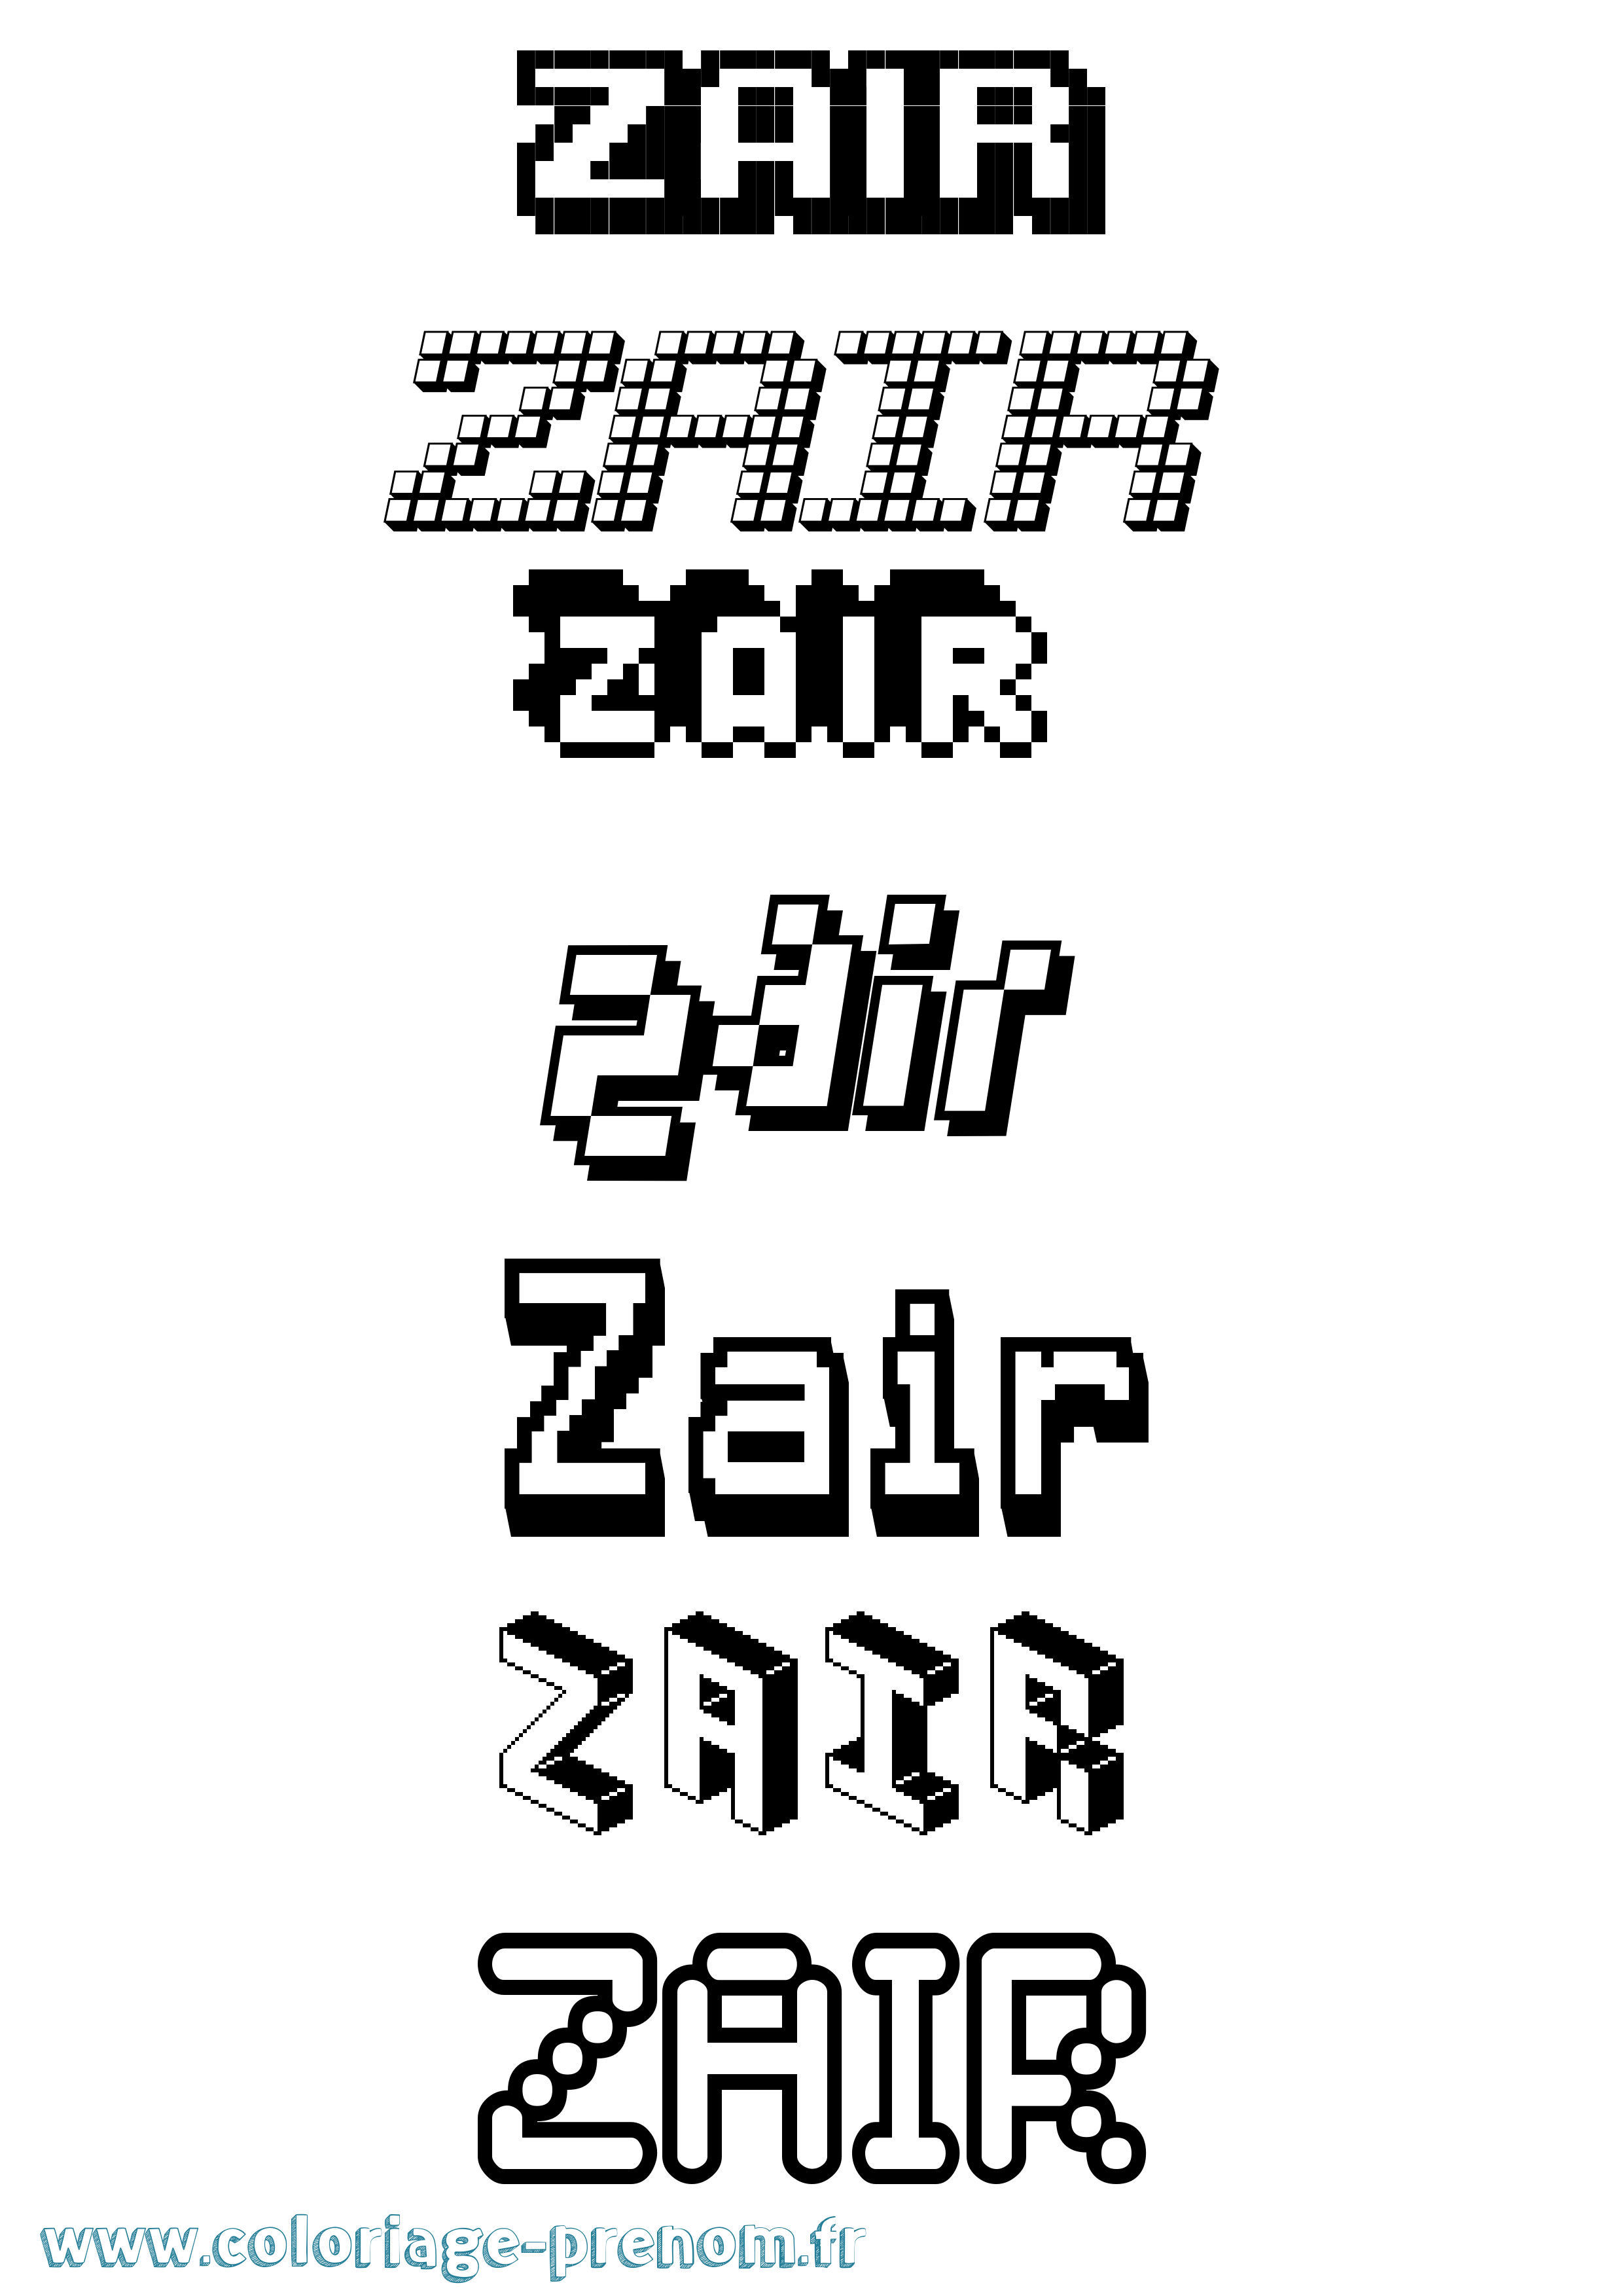 Coloriage prénom Zair Pixel